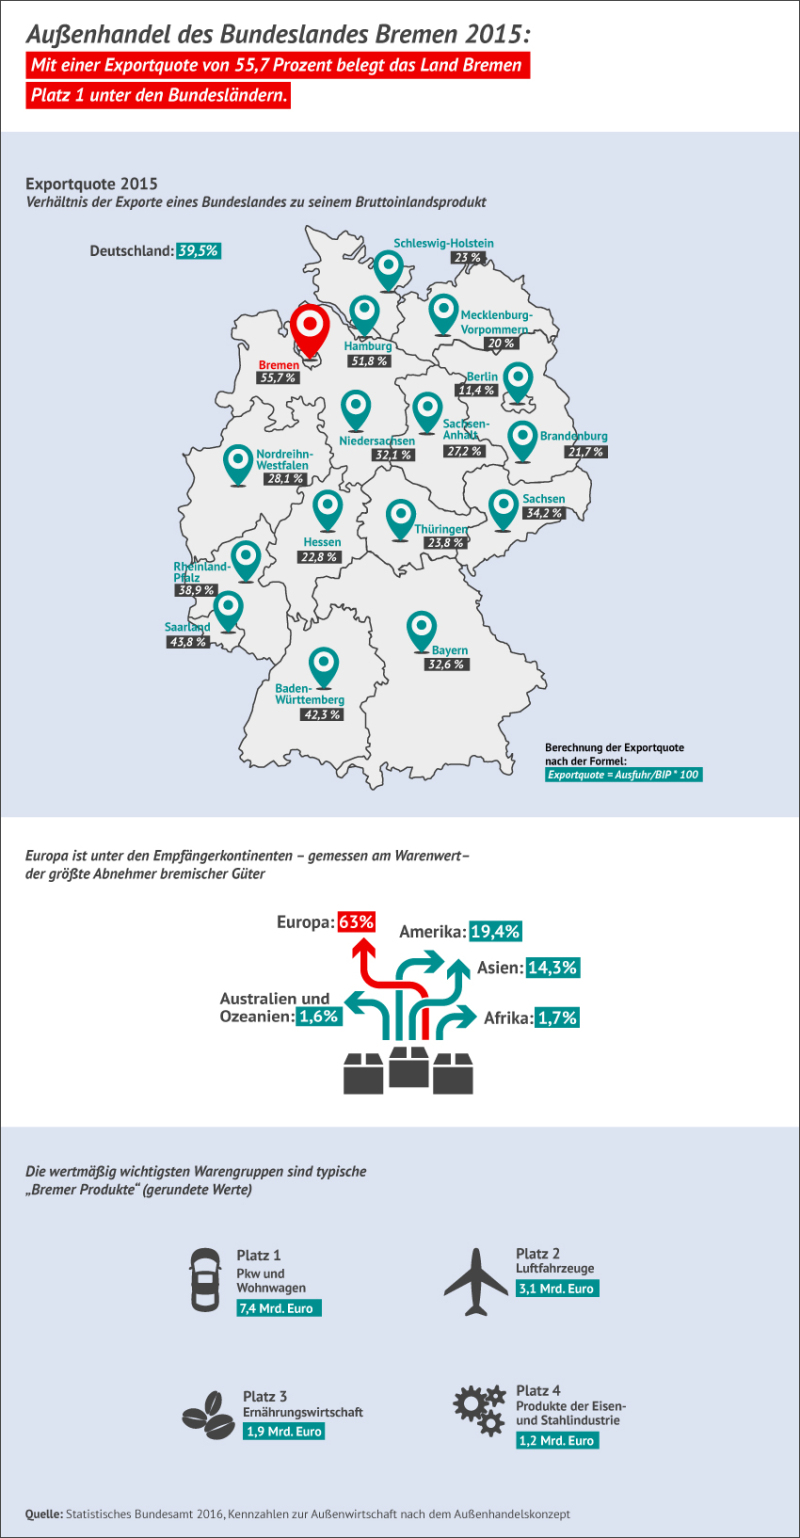 Bremen ist 2015 erneut Spitzenreiter bei den Exportquoten im Bundesländervergleich